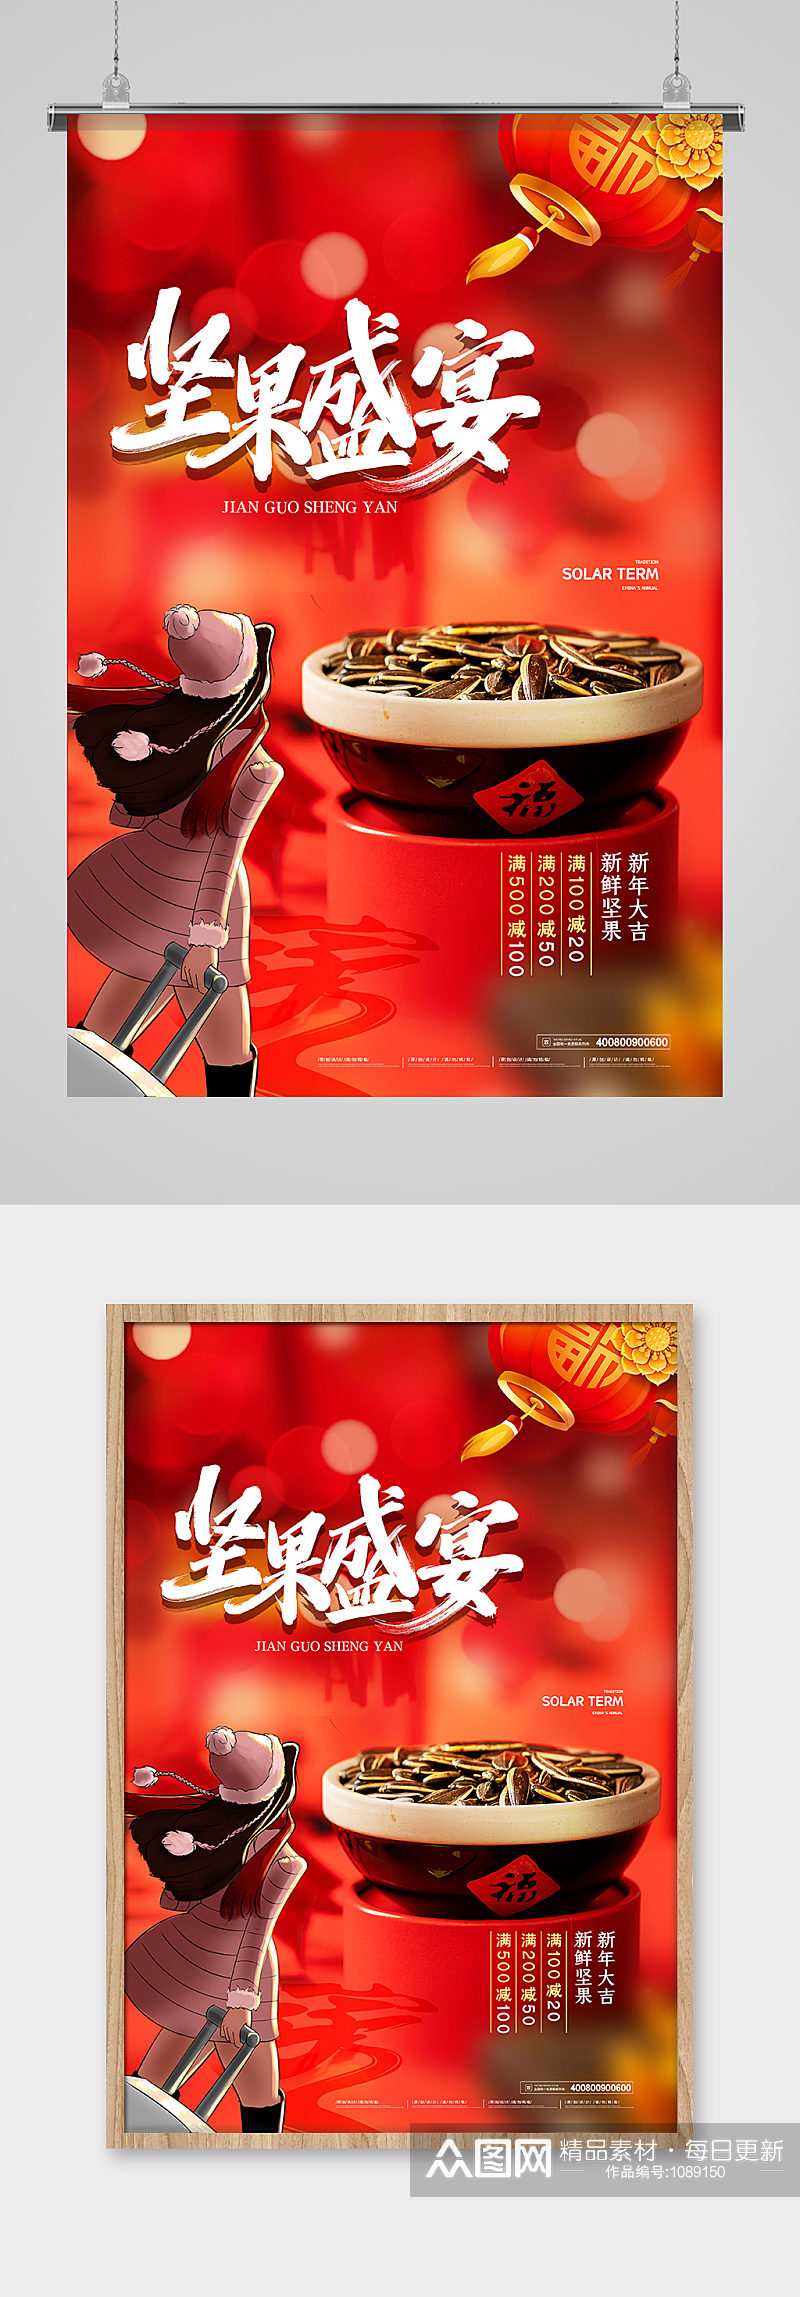 简约新年春节坚果年货盛宴促销海报素材